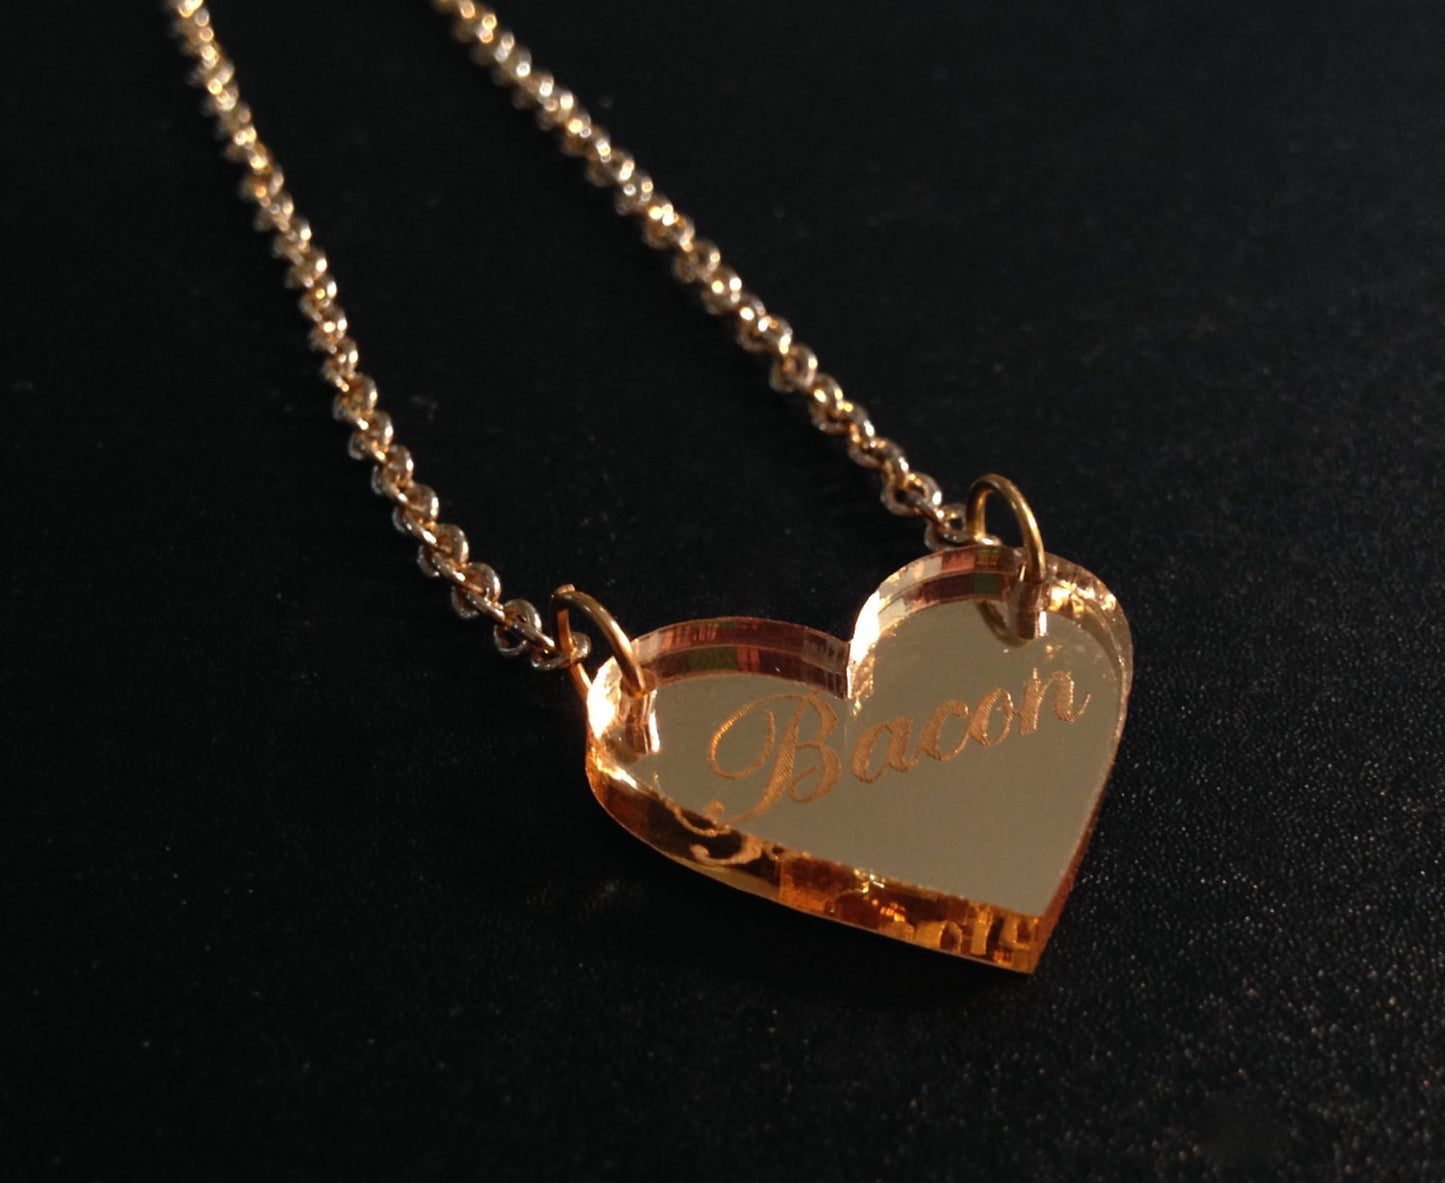 Bacon Heart Gold Mirror Acrylic Necklace